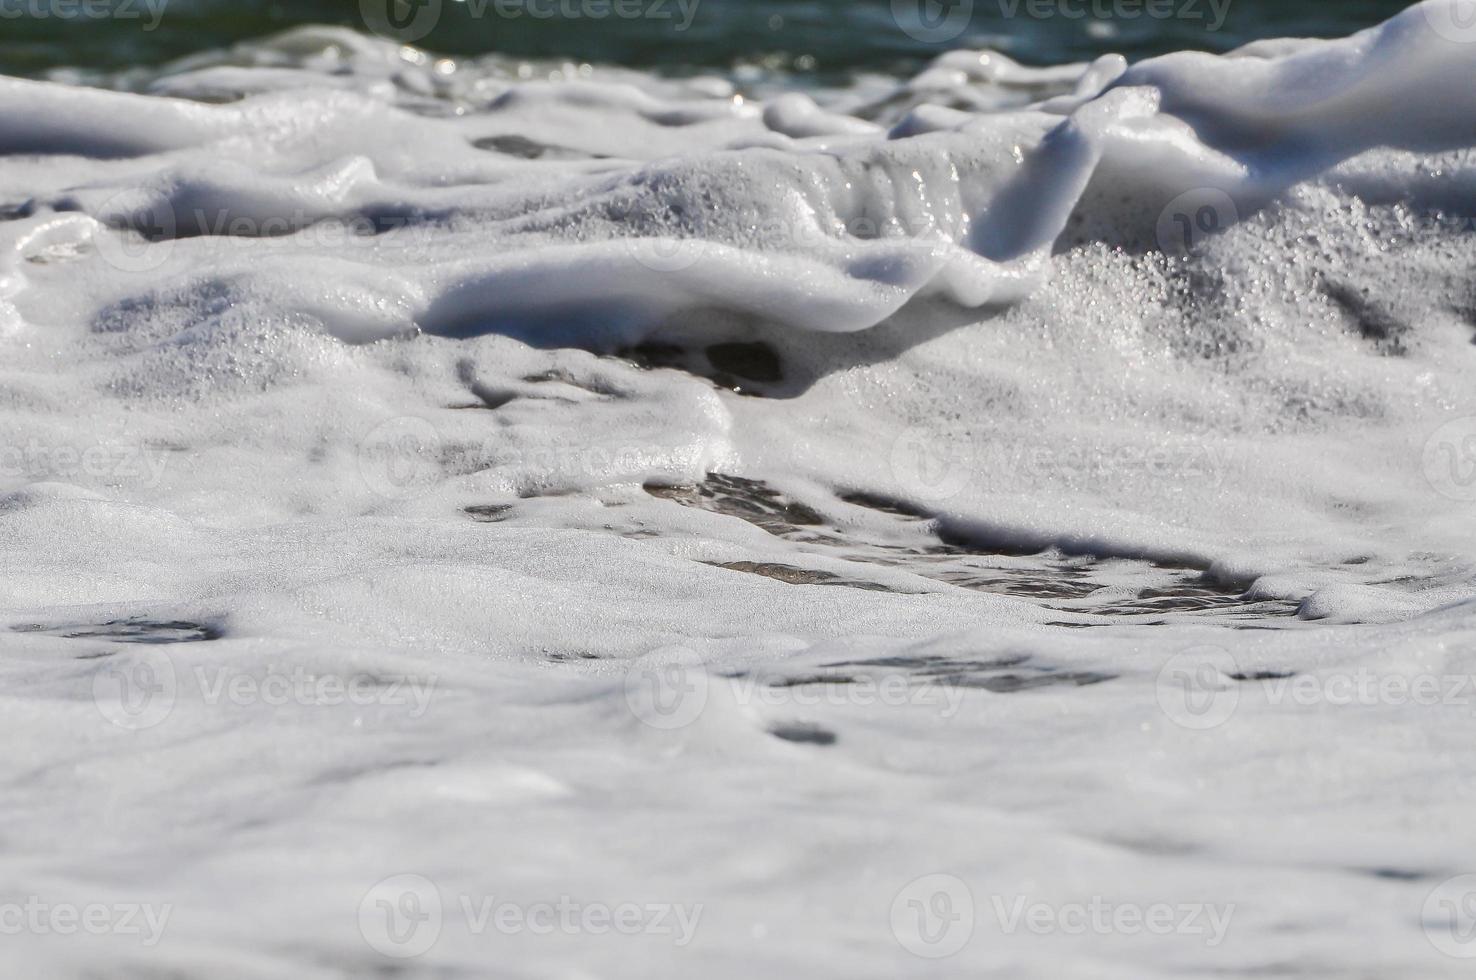 sea foam. splash water photo